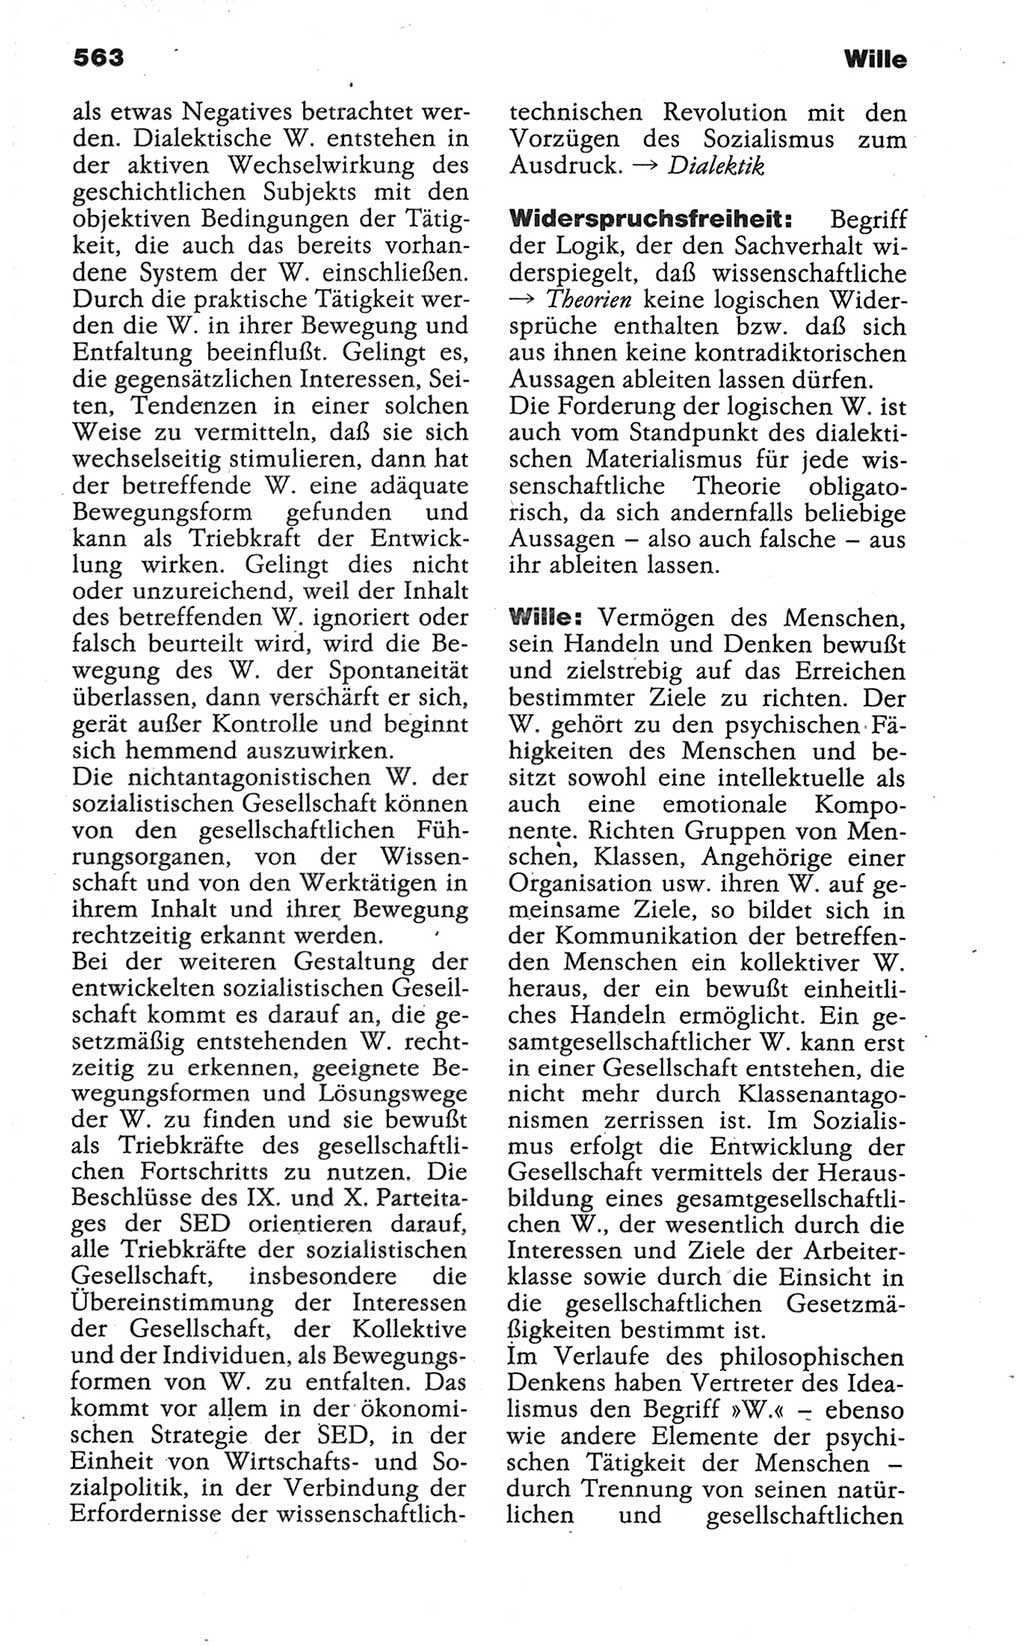 Wörterbuch der marxistisch-leninistischen Philosophie [Deutsche Demokratische Republik (DDR)] 1986, Seite 563 (Wb. ML Phil. DDR 1986, S. 563)